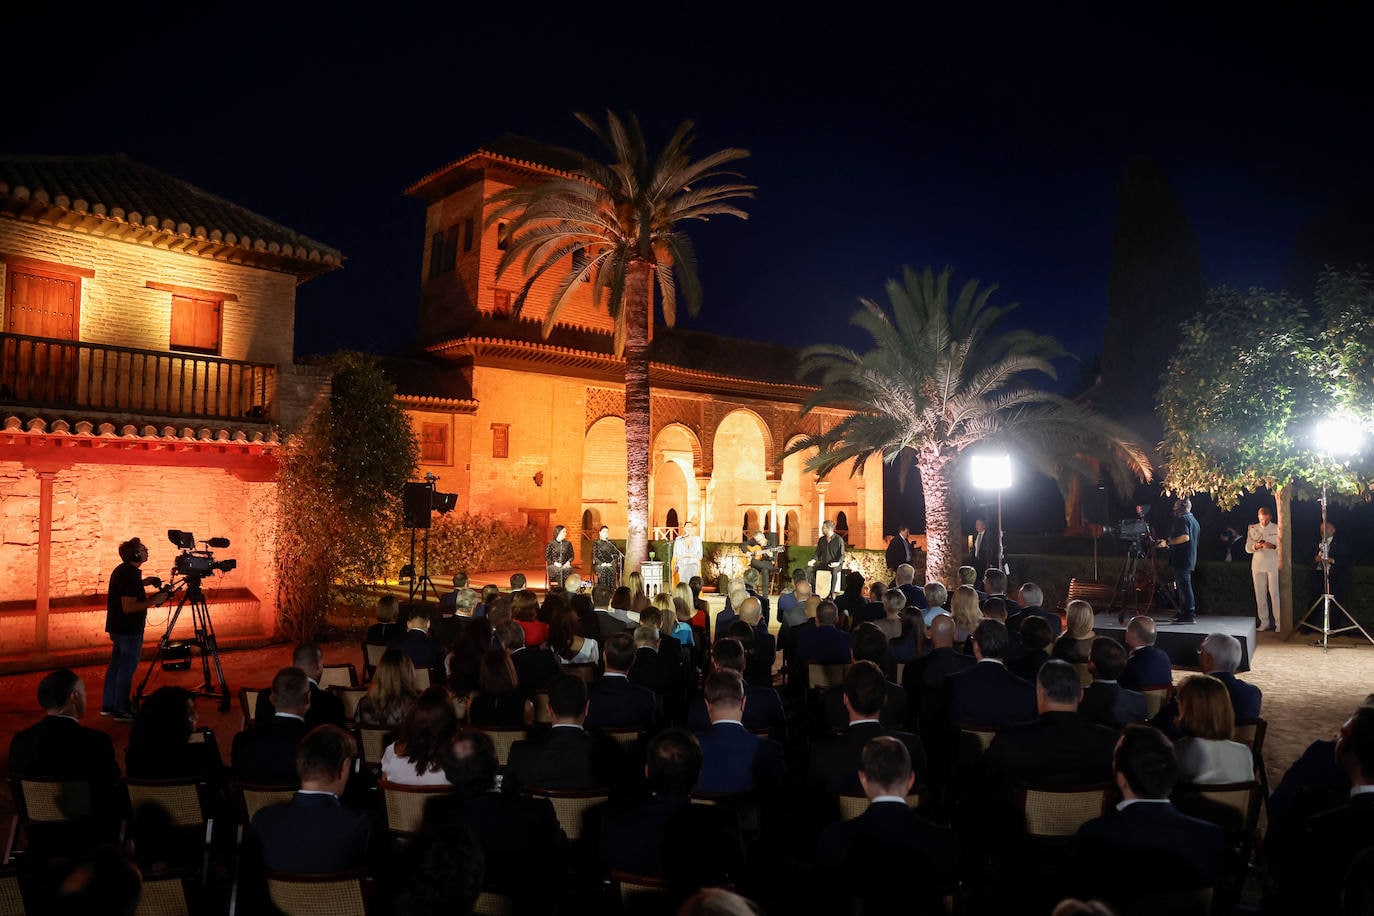 Un espectáculo flamenco remató la velada en La Alhambra antes de la cena en el Parador de Granada.